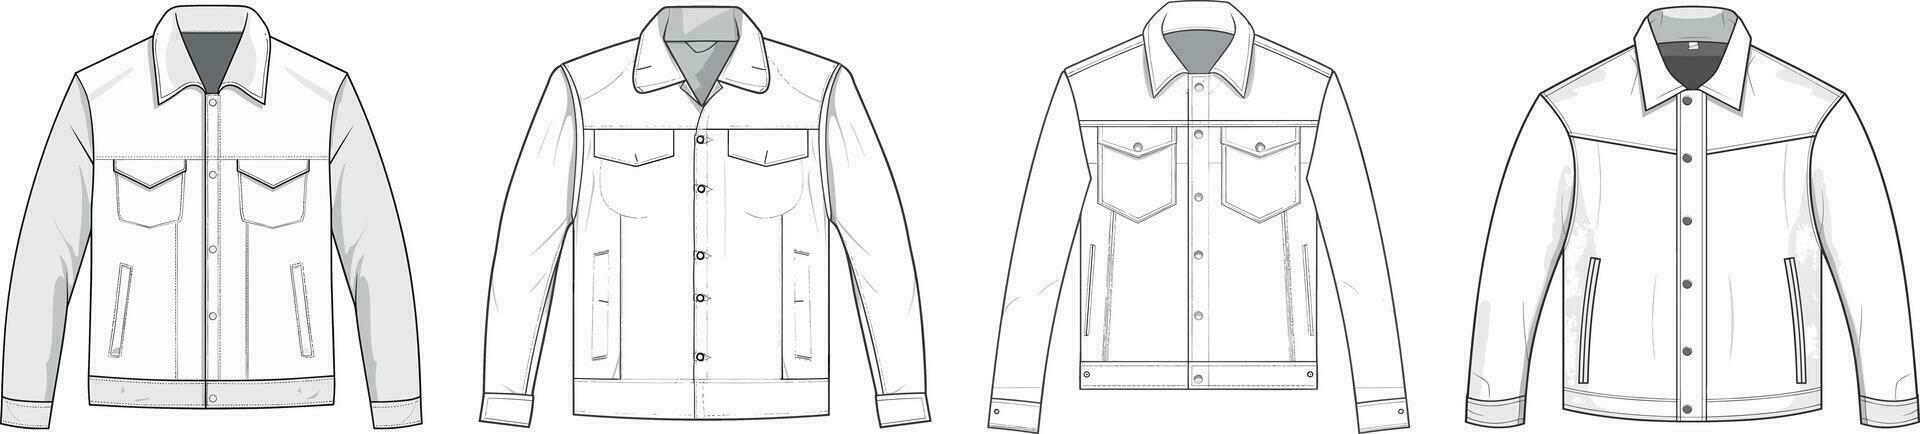 template jacket mockup, vector illustration flat design outline